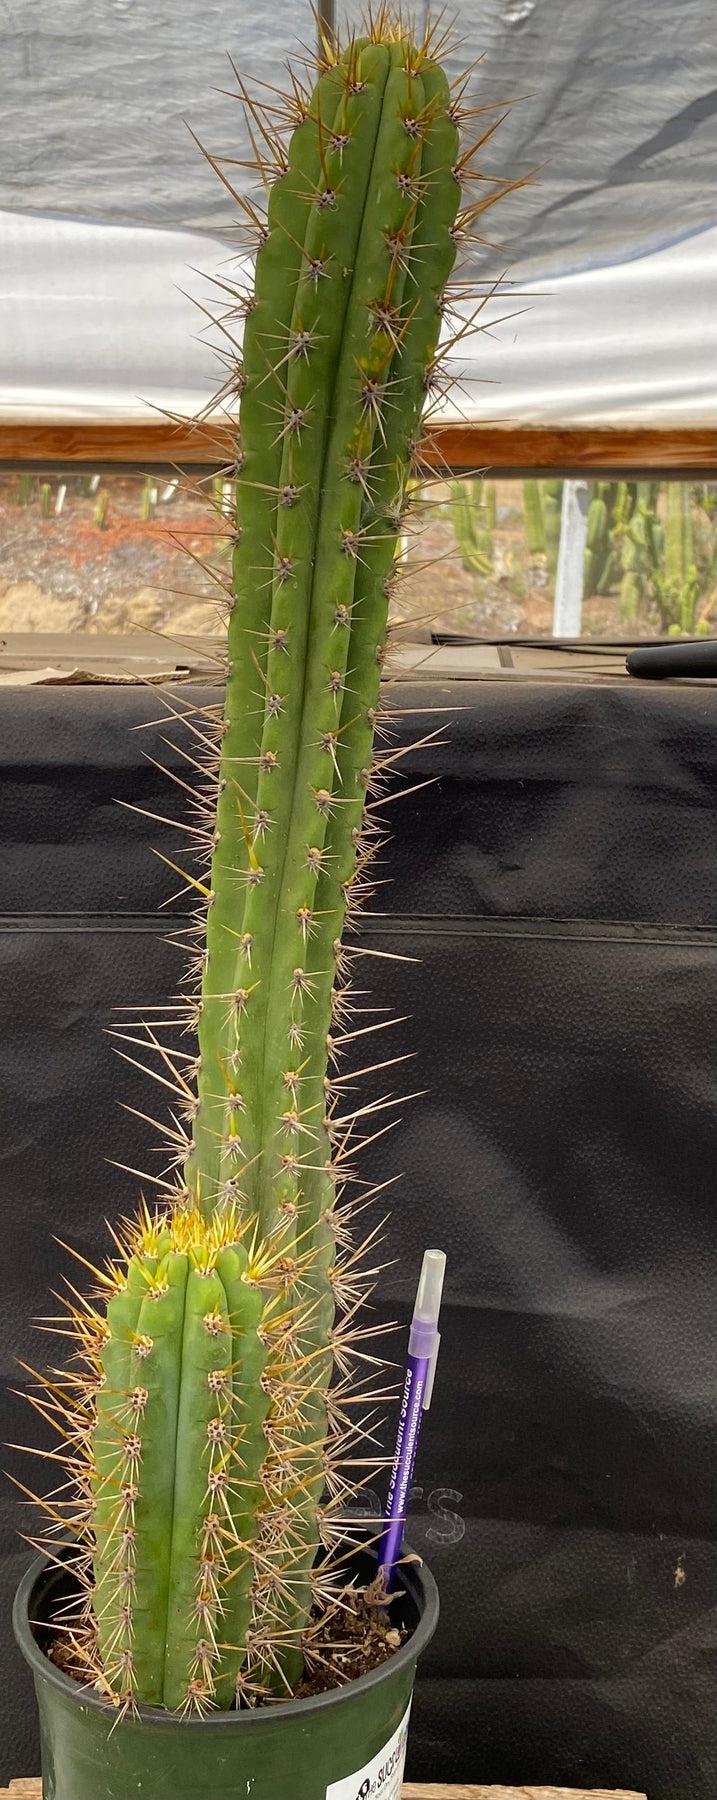 #EC95 EXACT Trichocereus Cuzcoensis Cactus 24 "